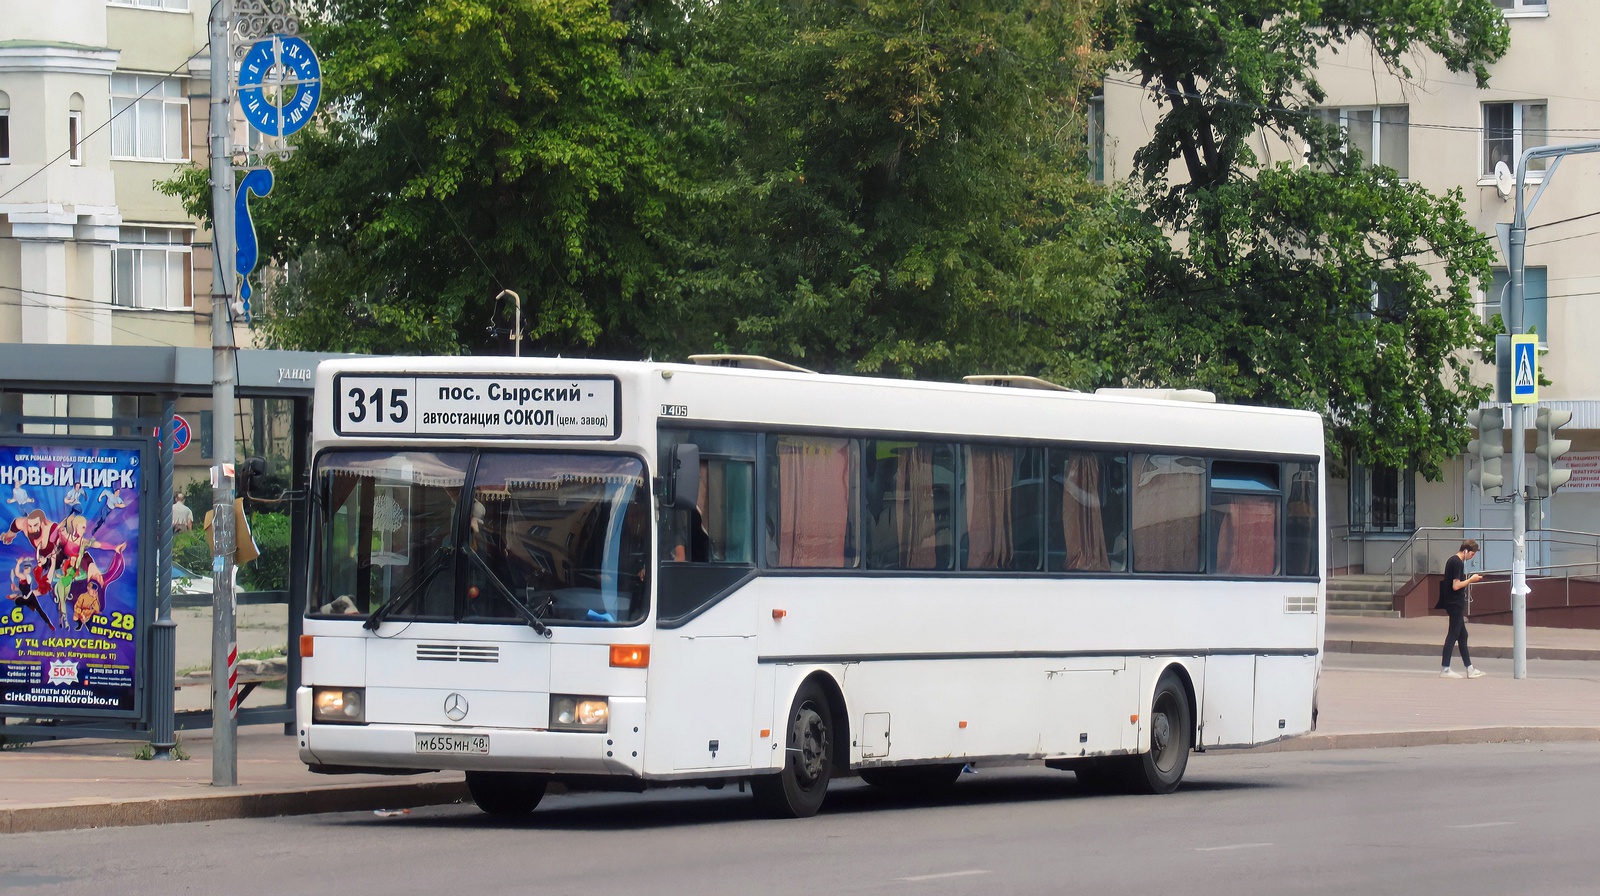 Lipetsk region, Mercedes-Benz O405 № М 655 МН 48